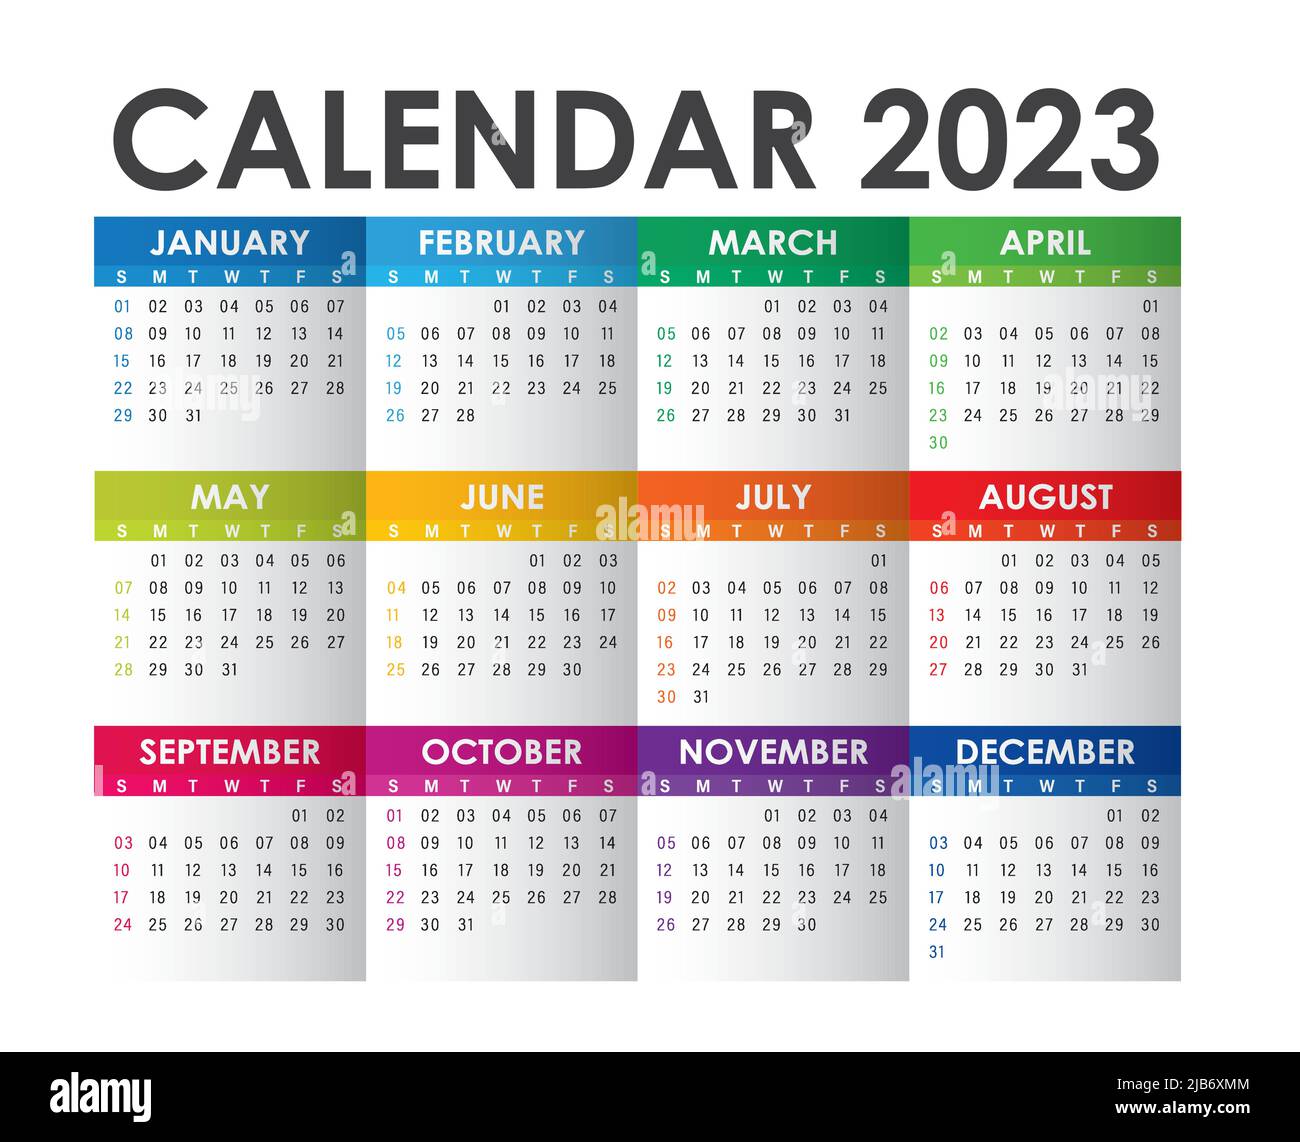 Bạn đã sẵn sàng đón chào năm mới 2024 với chiếc lịch vạn niên đầy màu sắc và thú vị? Chỉ còn vài tháng nữa thôi! Hãy xem ngay hình ảnh liên quan để tìm kiếm một chiếc lịch ưng ý nhất cho năm mới sắp đến nhé! 